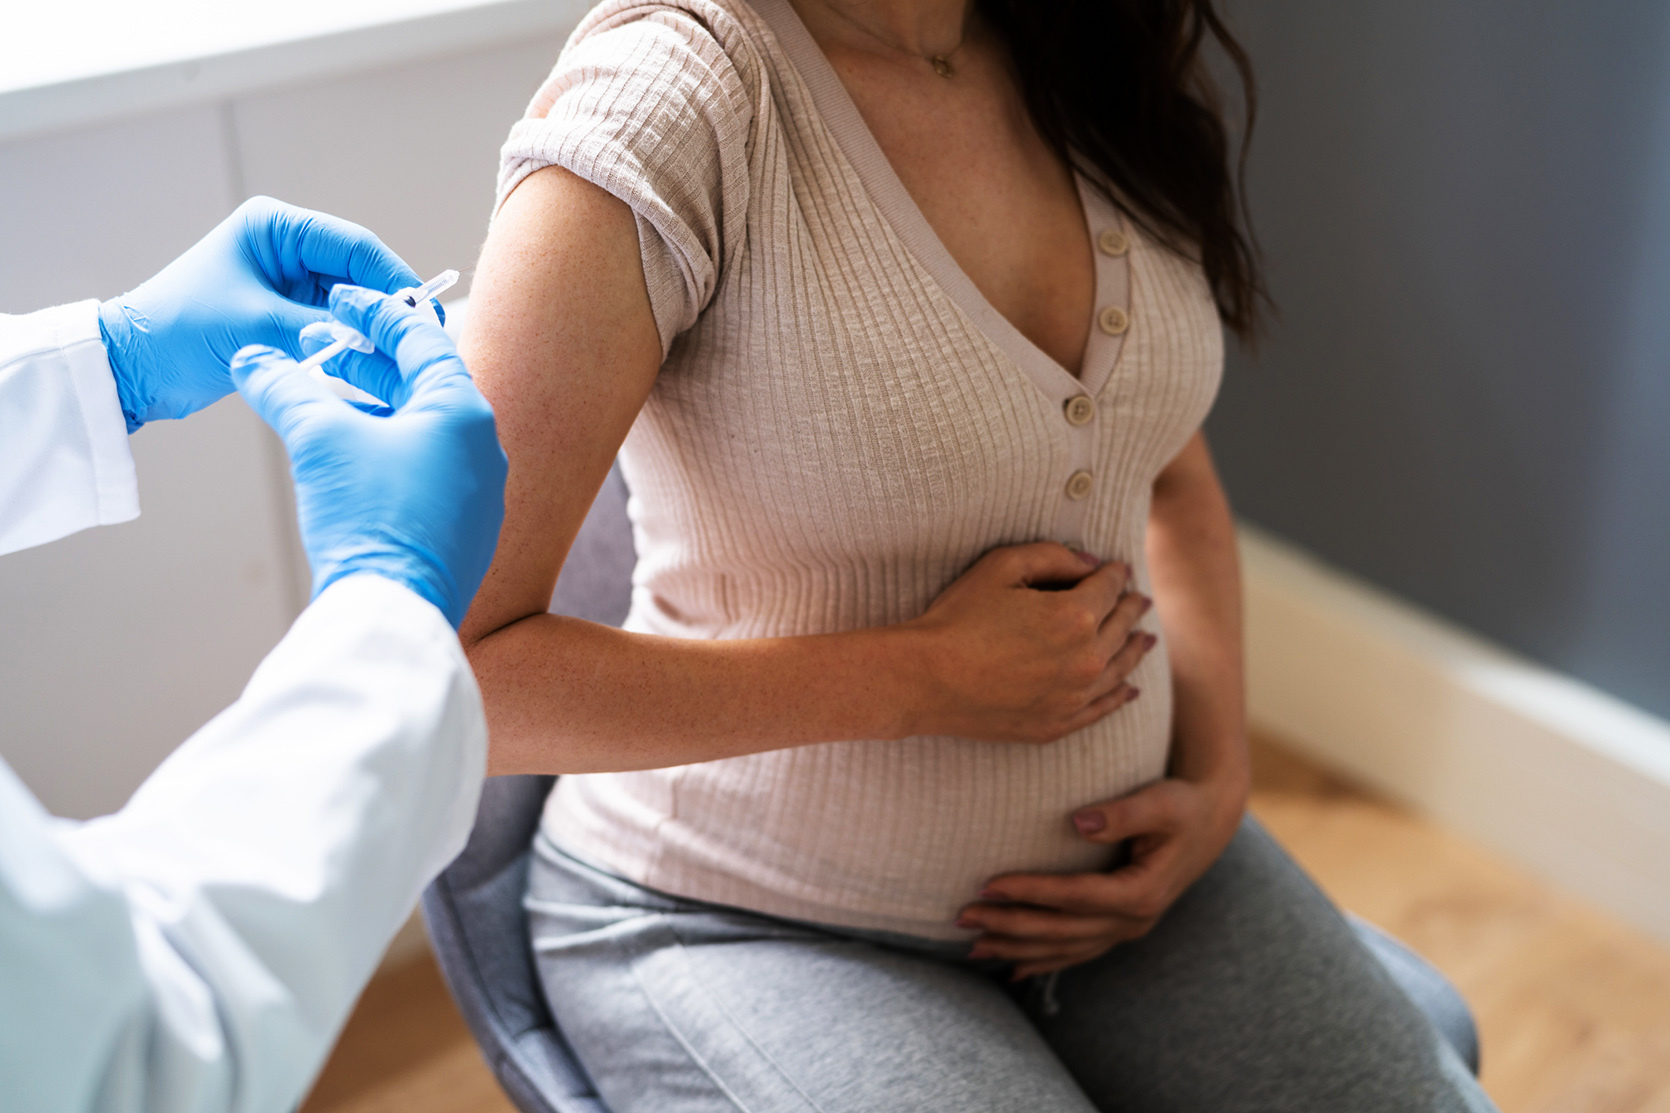 Morfologia w ciąży - kiedy i jakie badania wykonywać?